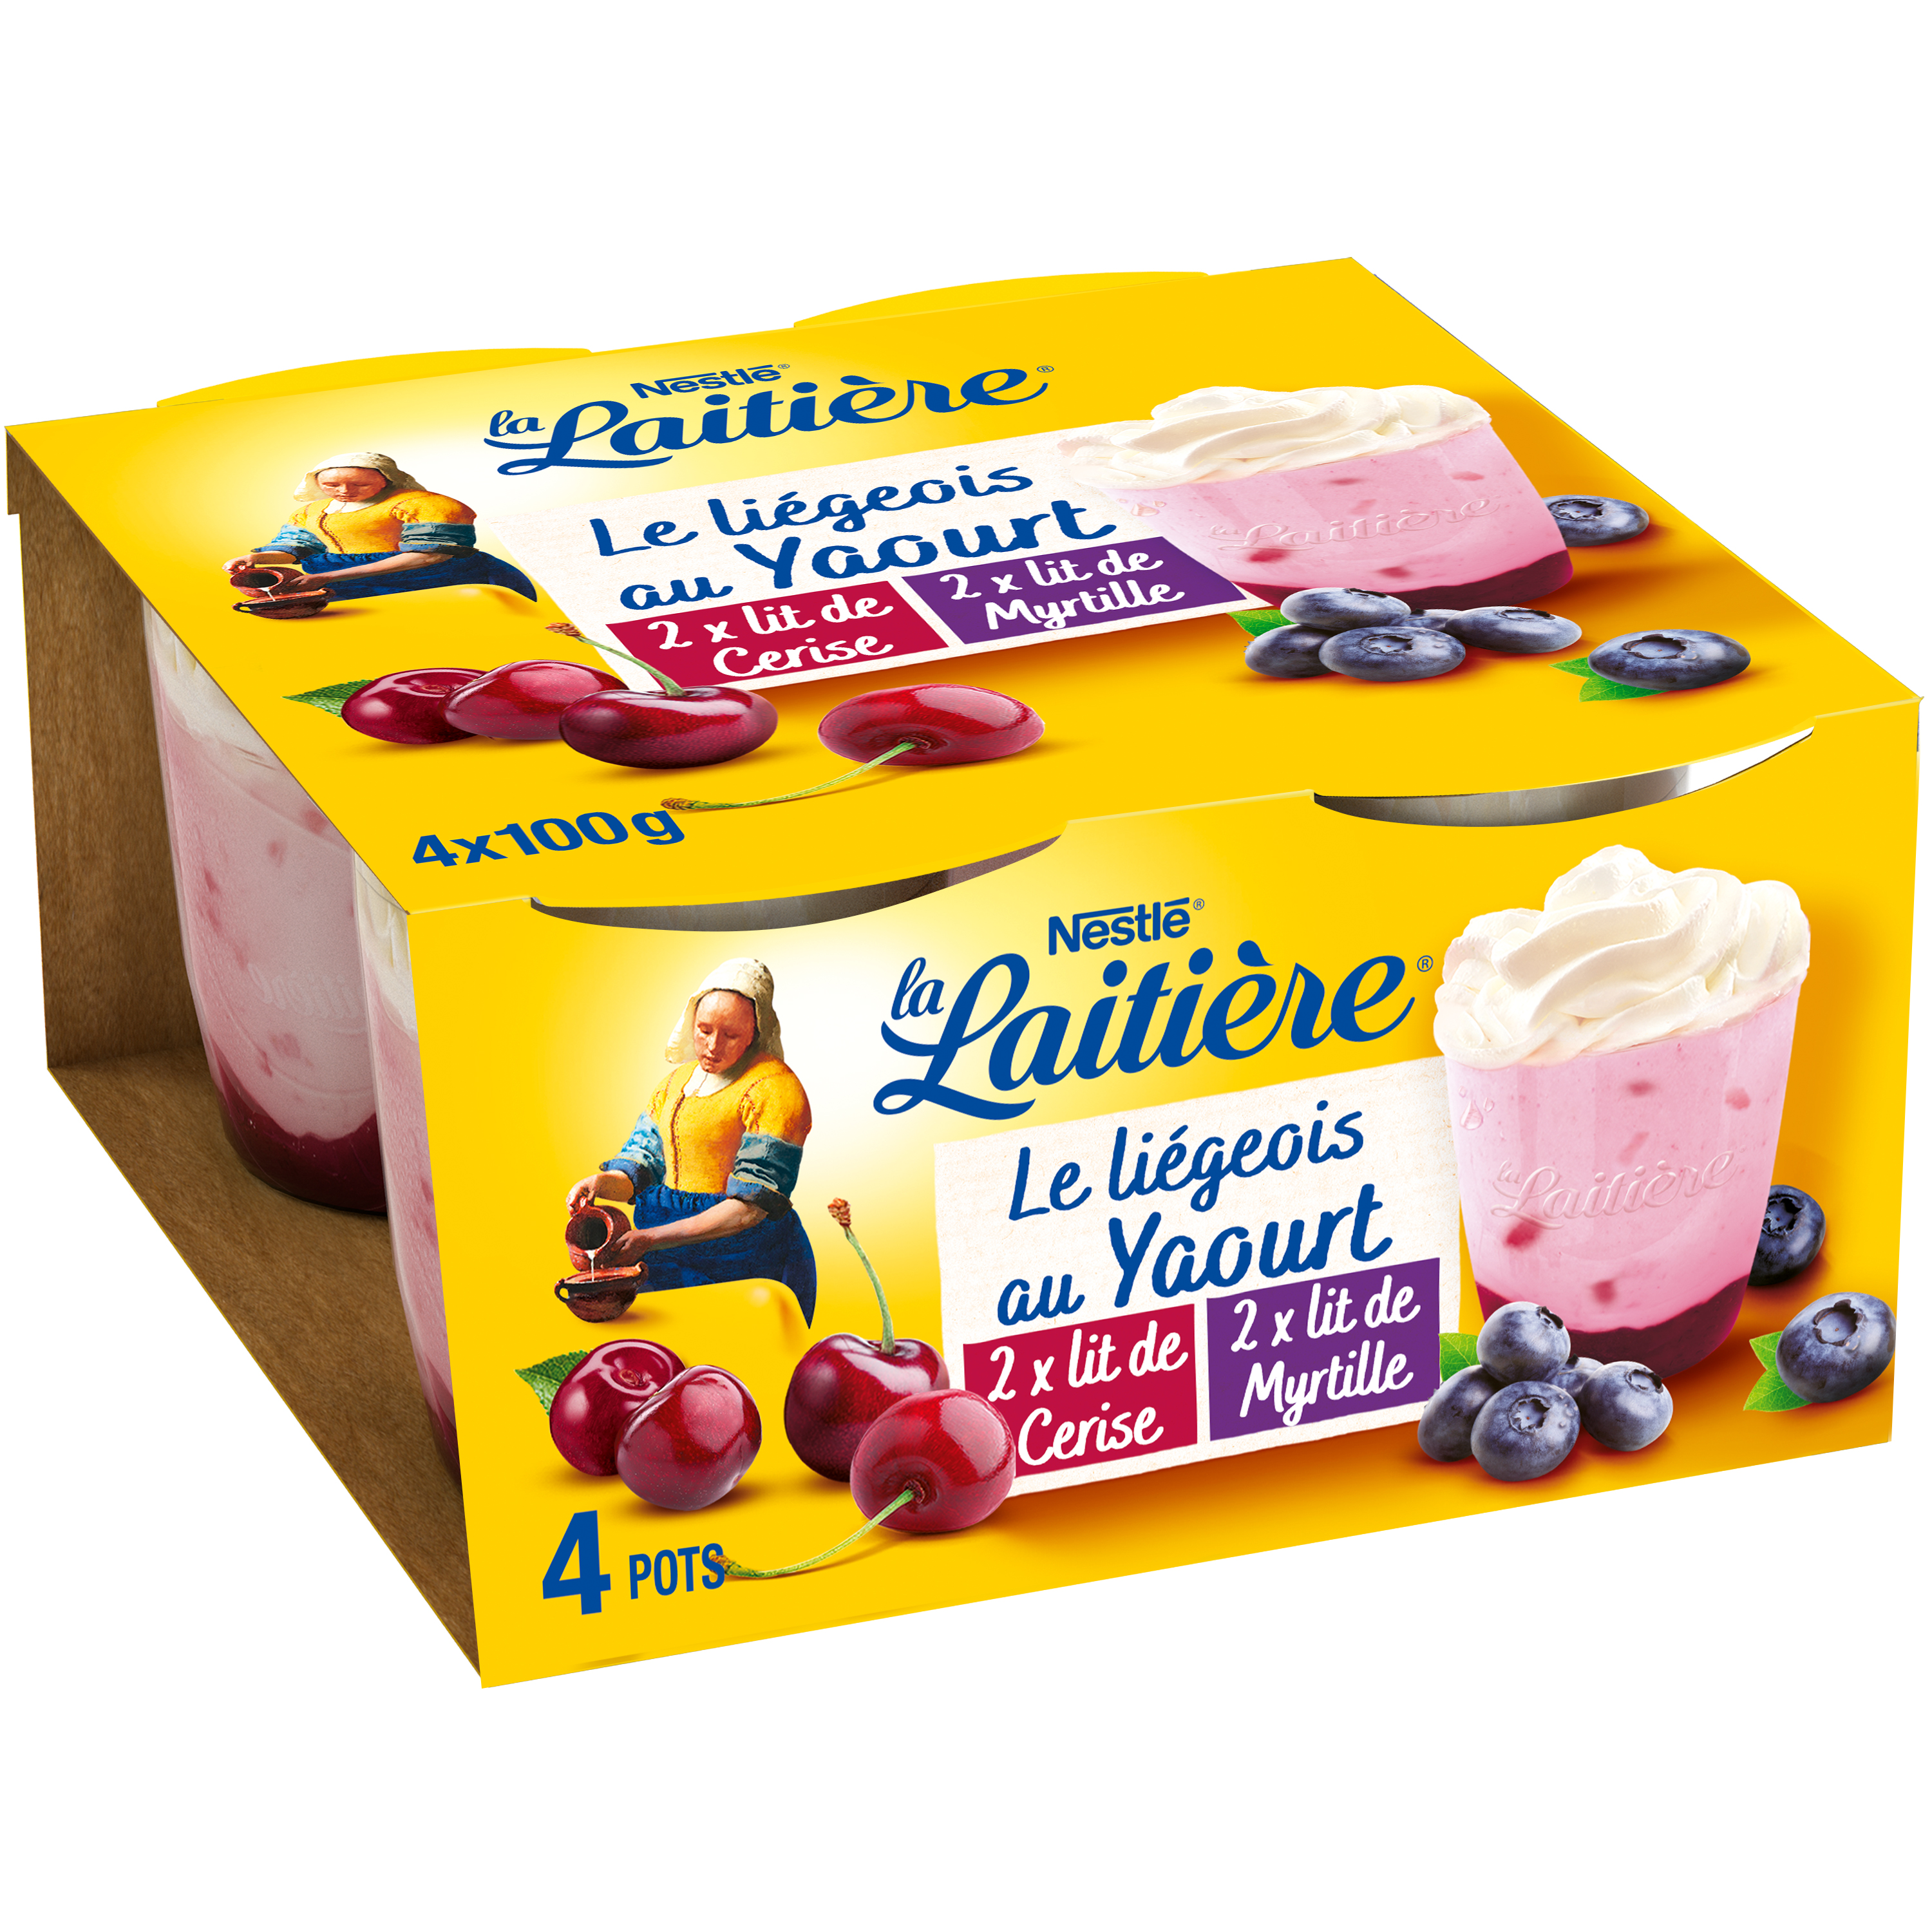 Liégeois au yaourt Cerise Myrtille